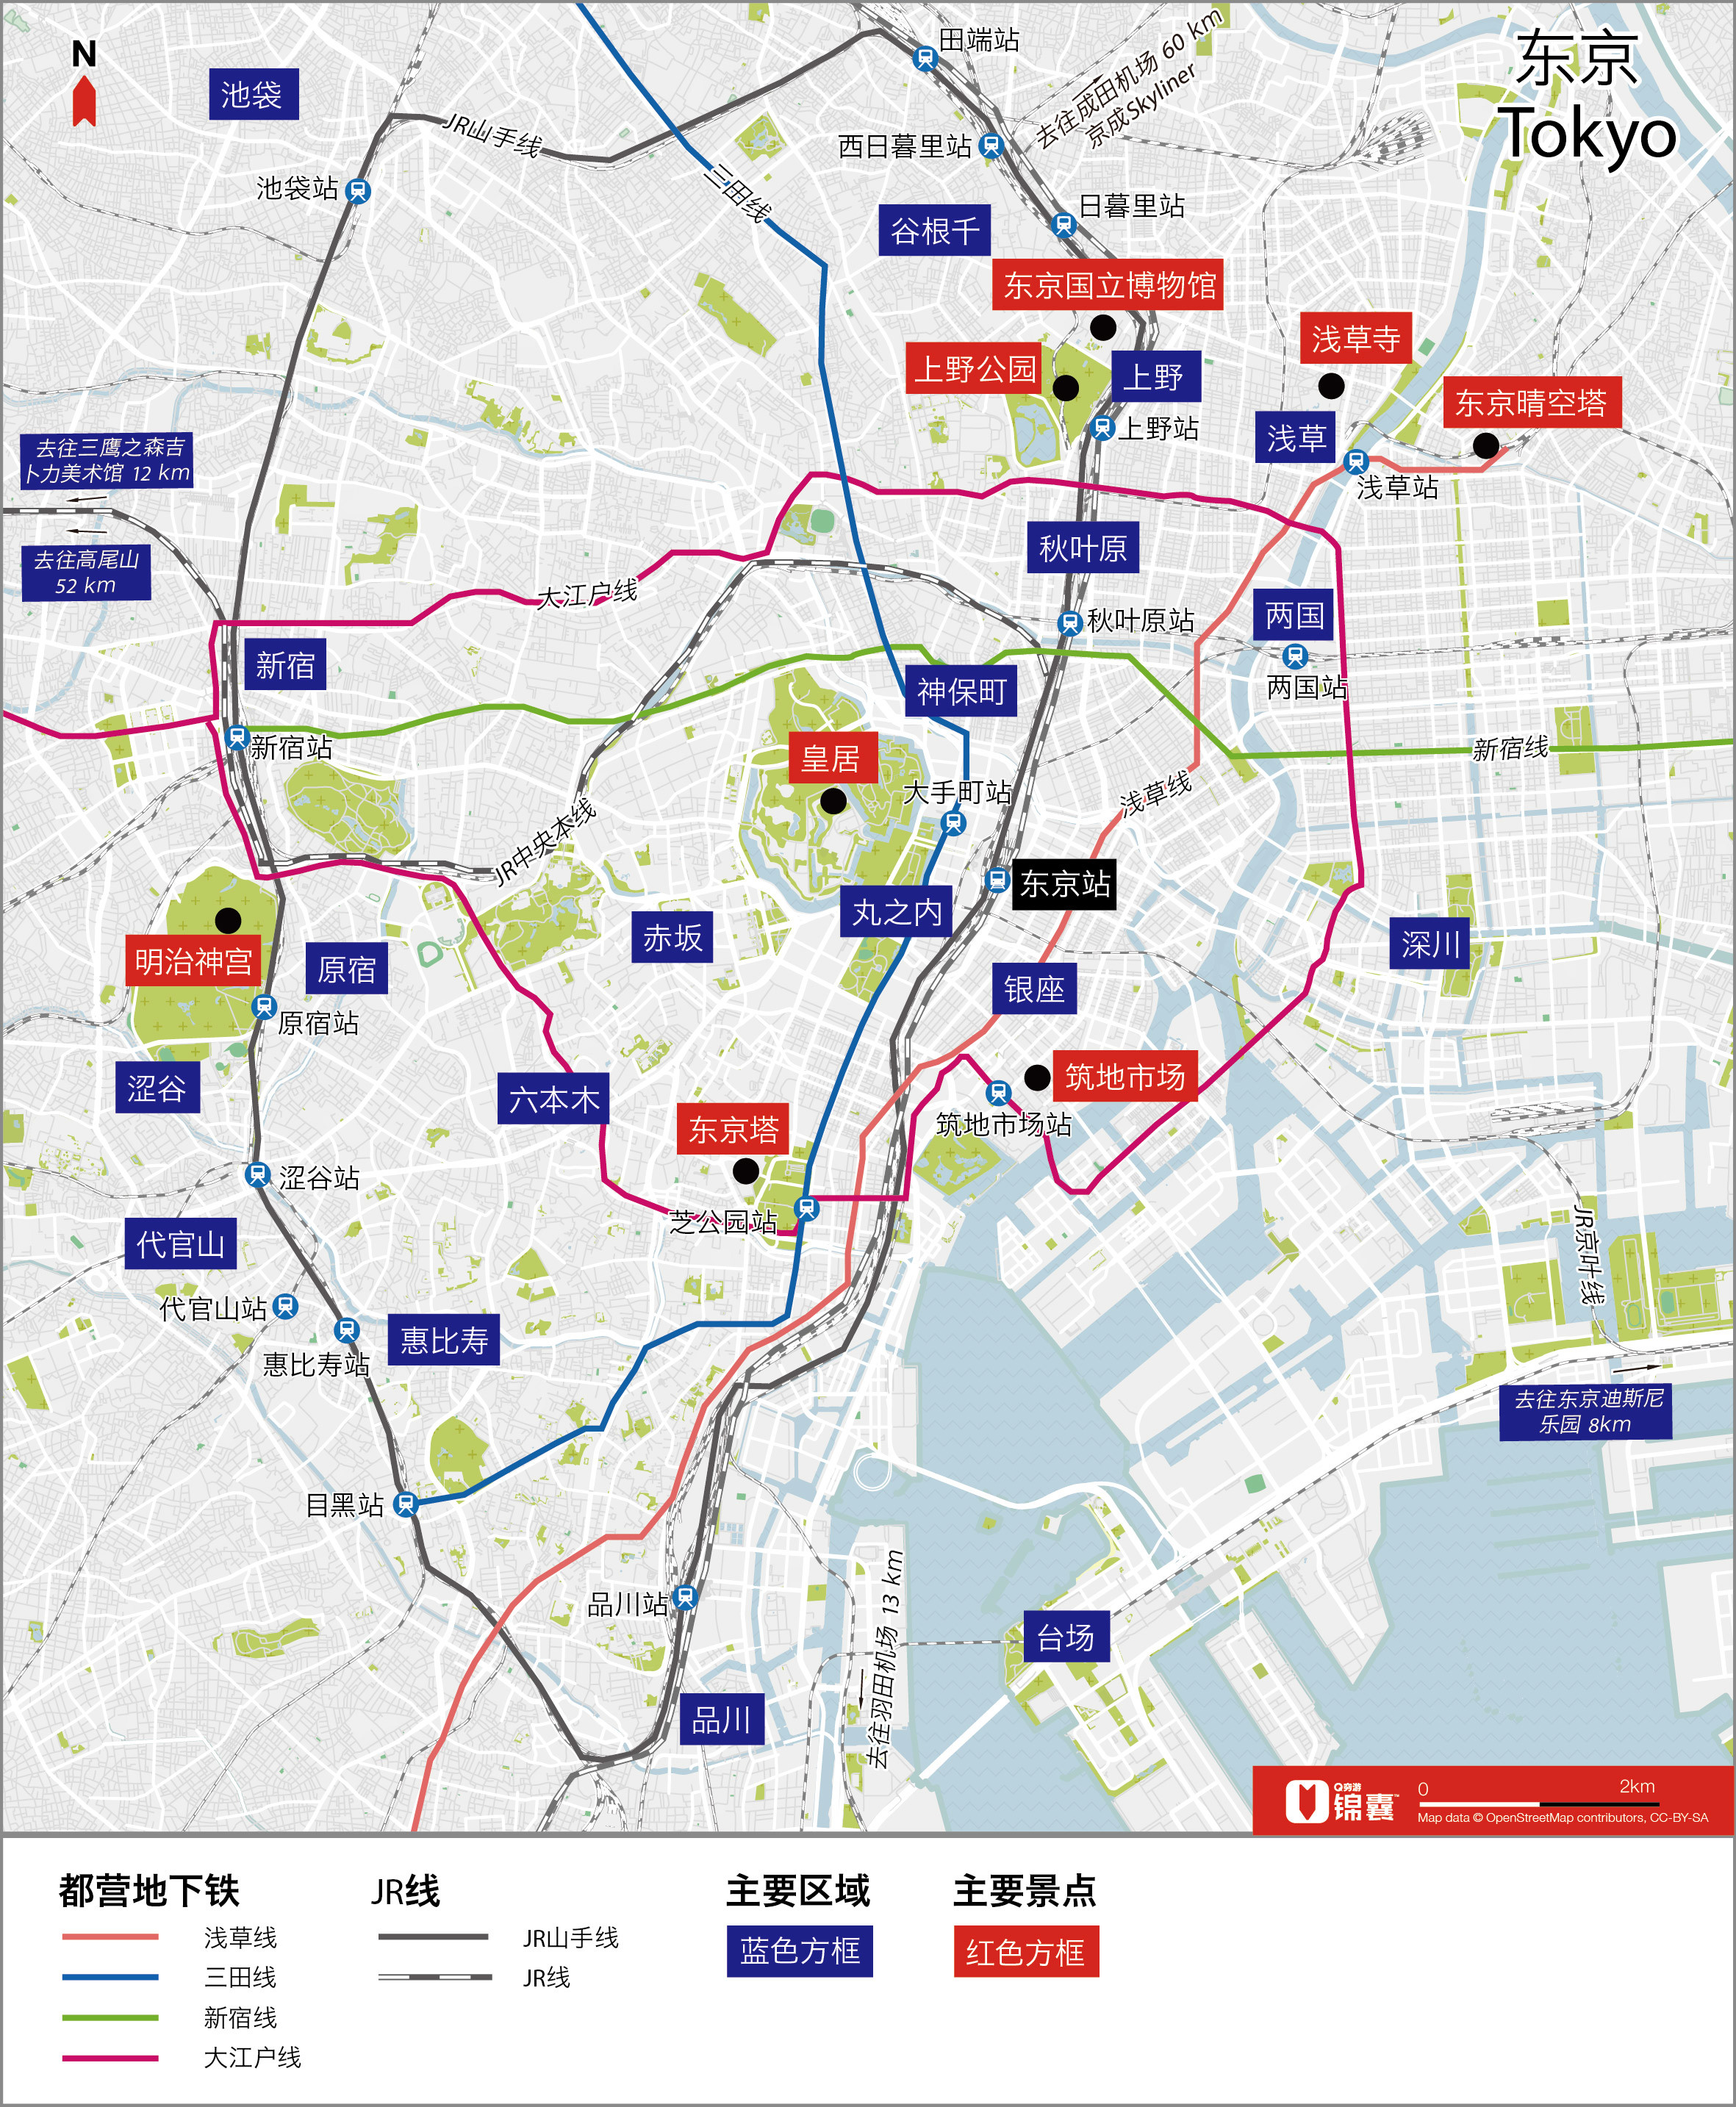 东京 景点区域概览